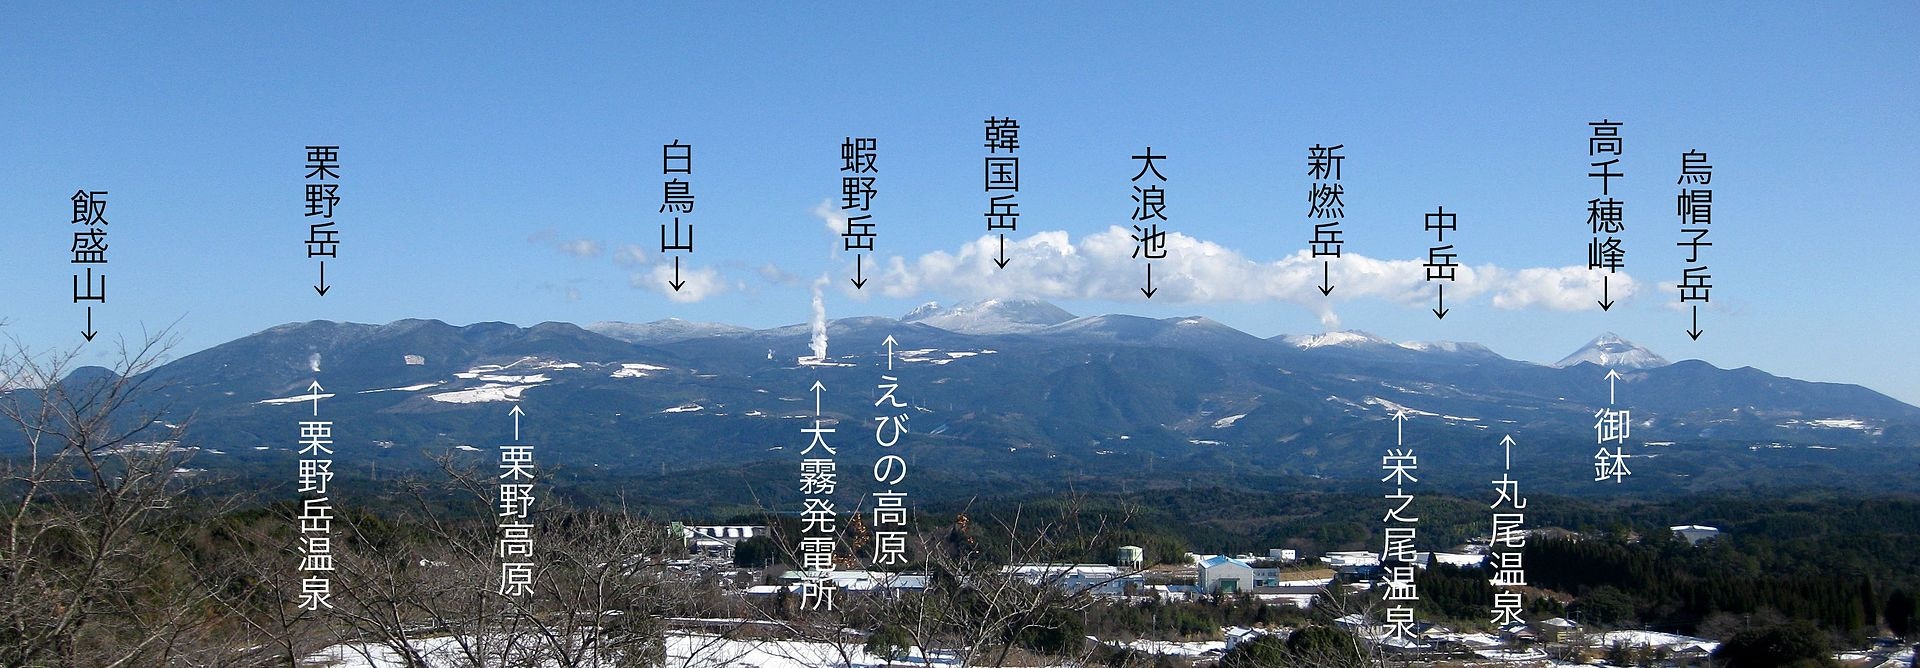 日本新燃岳火山噴發霧島山脈第四高峰鄰近紅葉天堂著名溫泉鄉